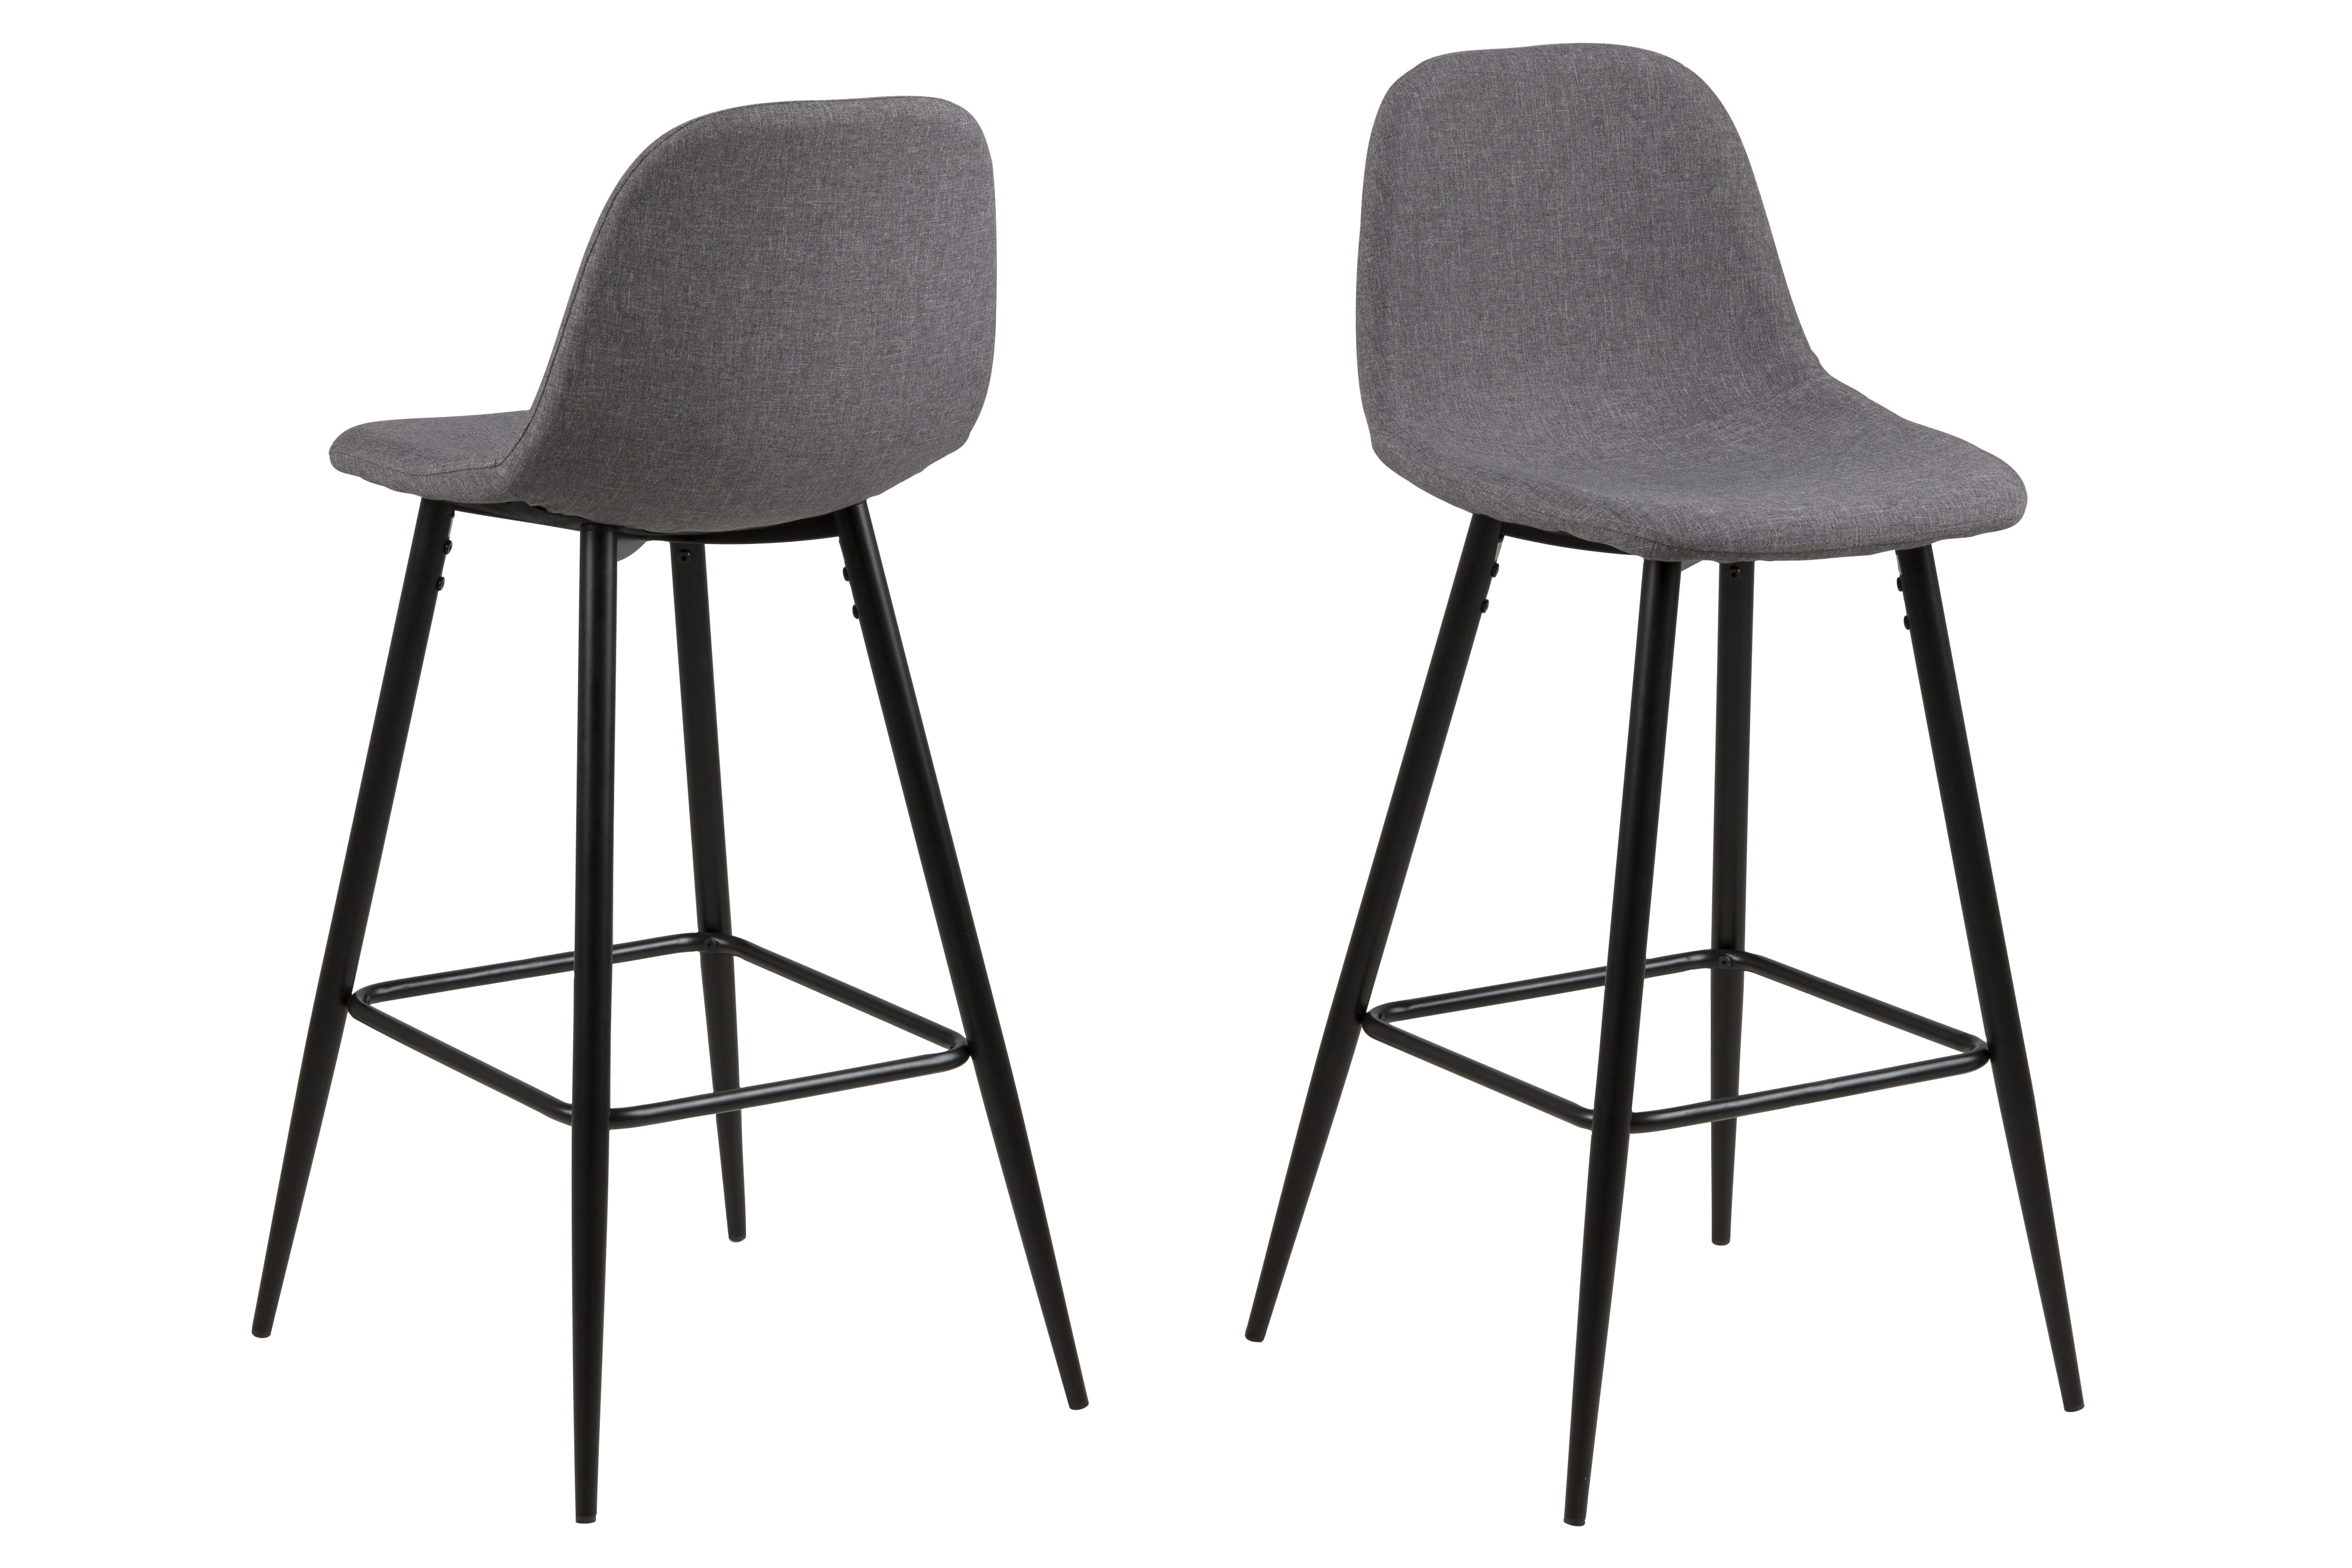 Rug Bagvaskelse Specialisere 2-jų baro-pusbario kėdžių komplektas Wilma, pilkas kaina | pigu.lt